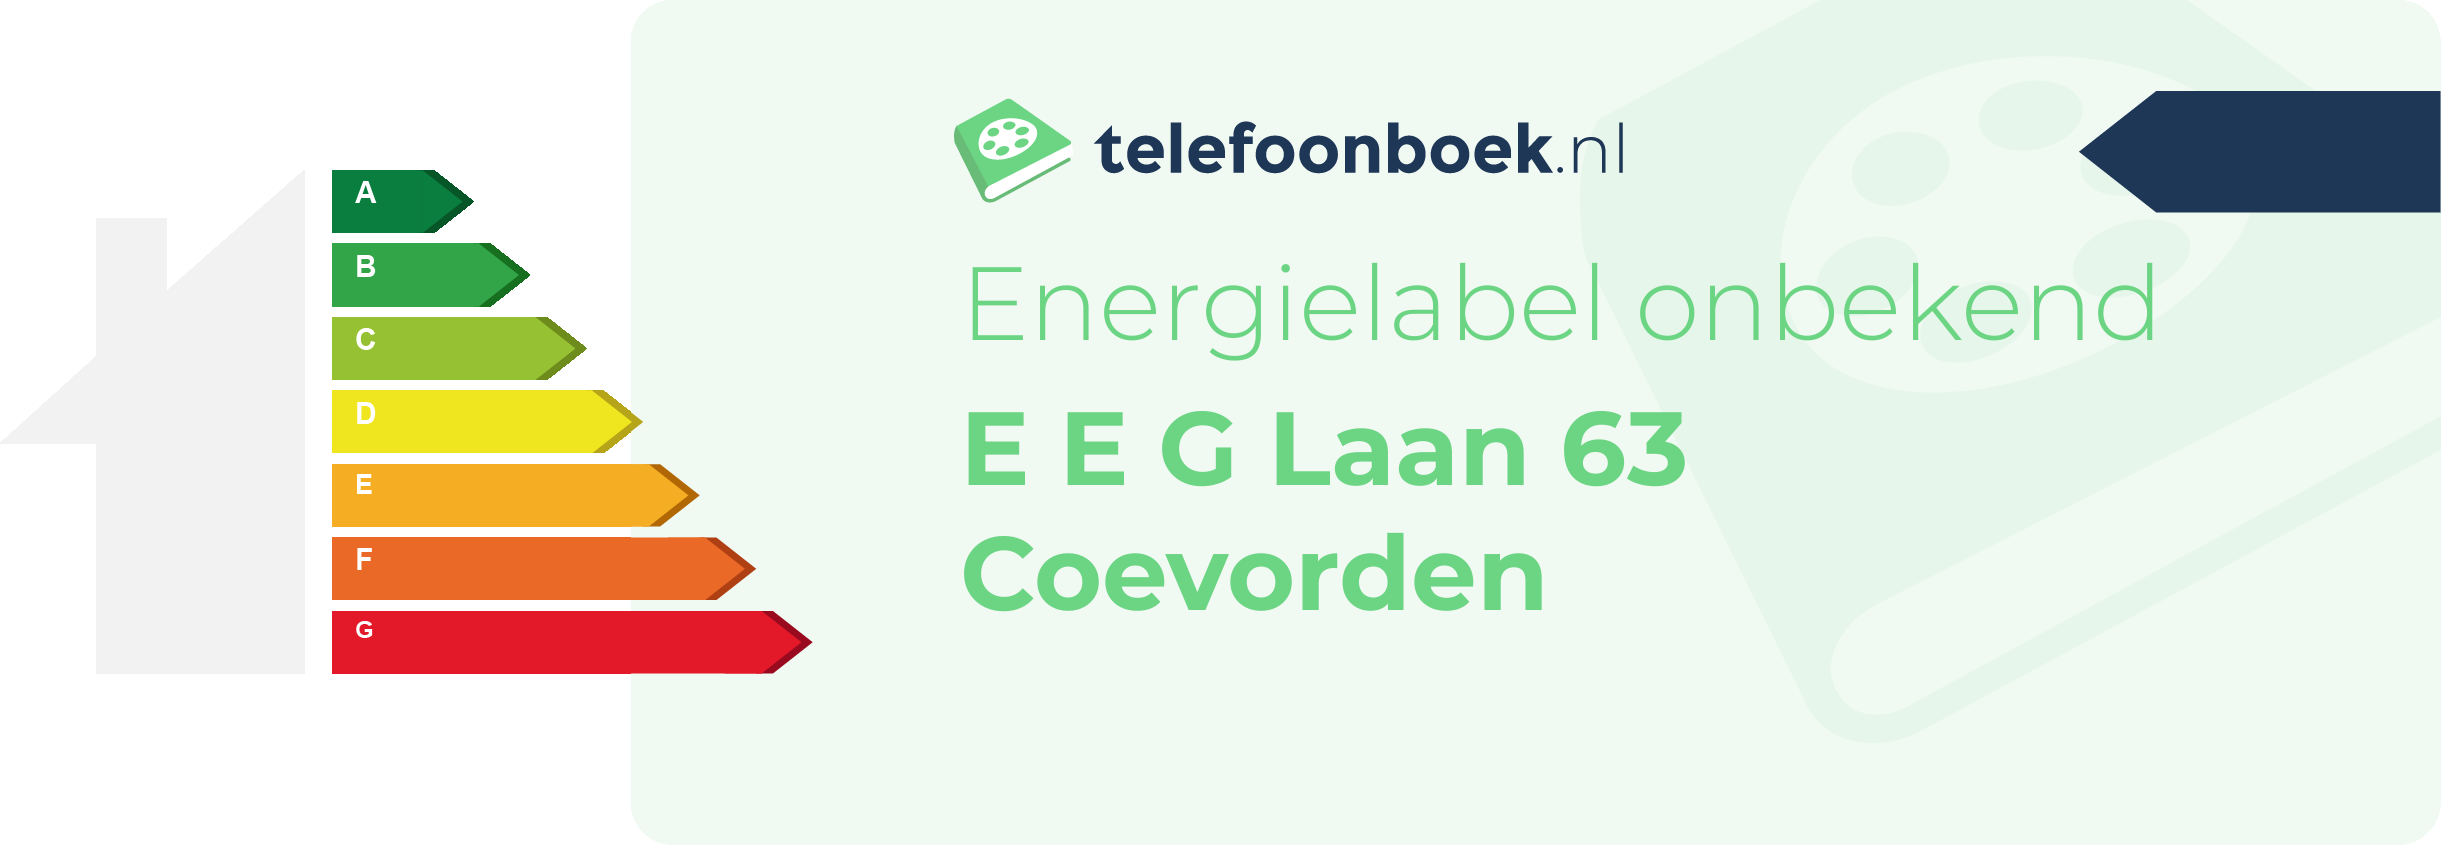 Energielabel E E G Laan 63 Coevorden